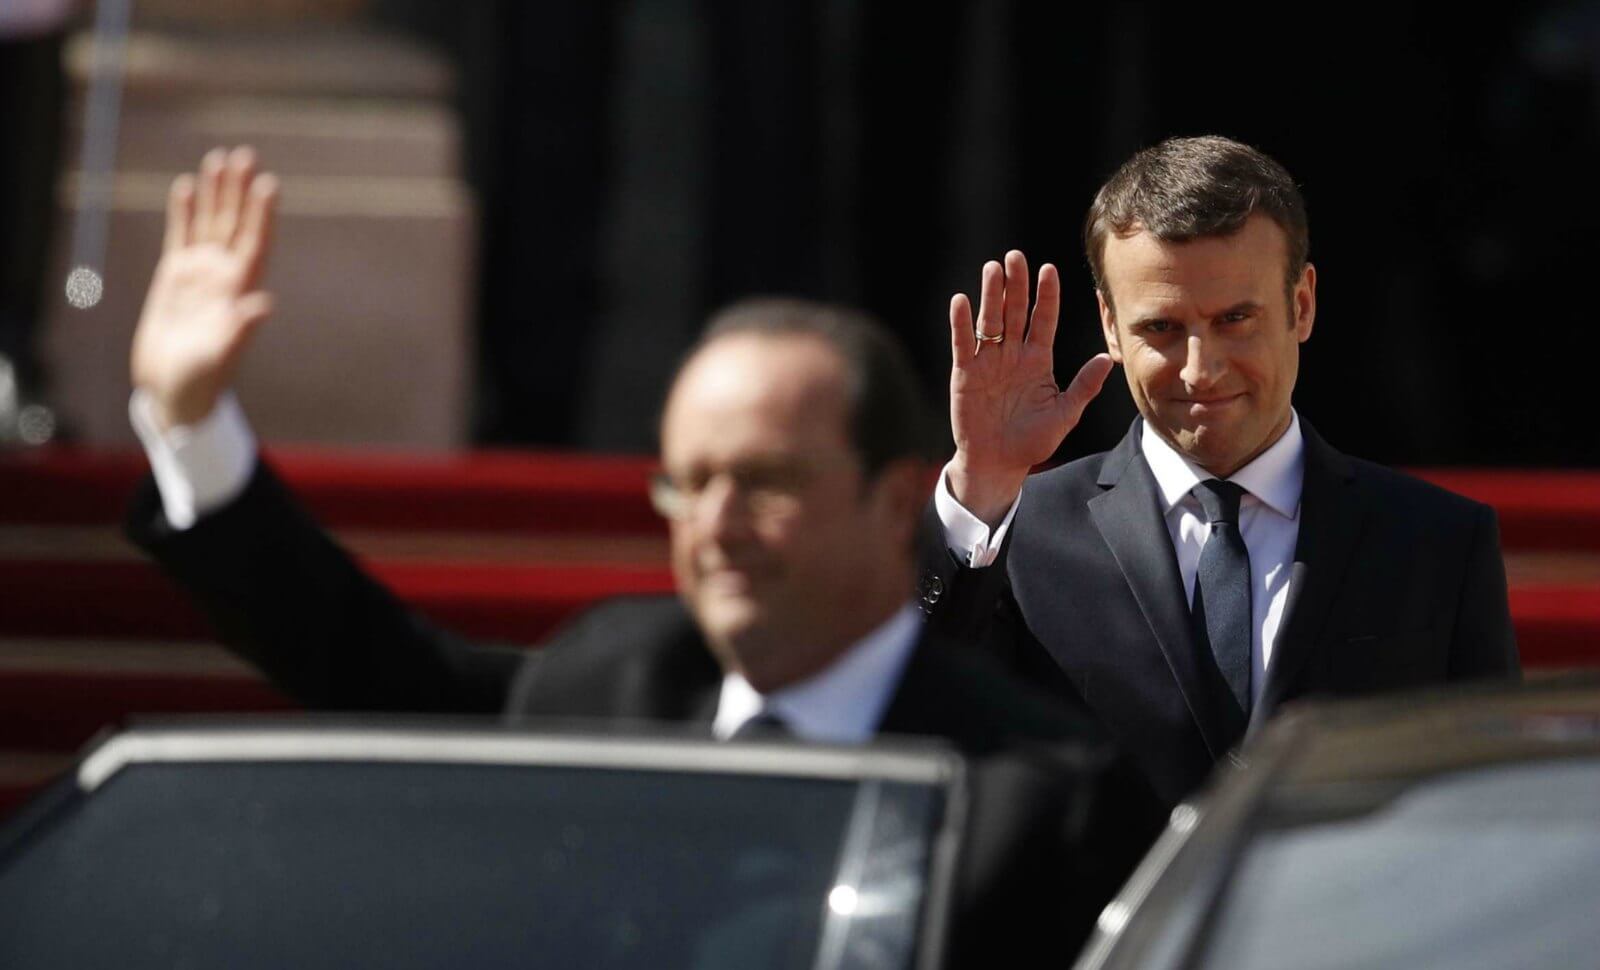 Macron-Hollande: non, il n’y a pas eu « échange des codes nucléaires »